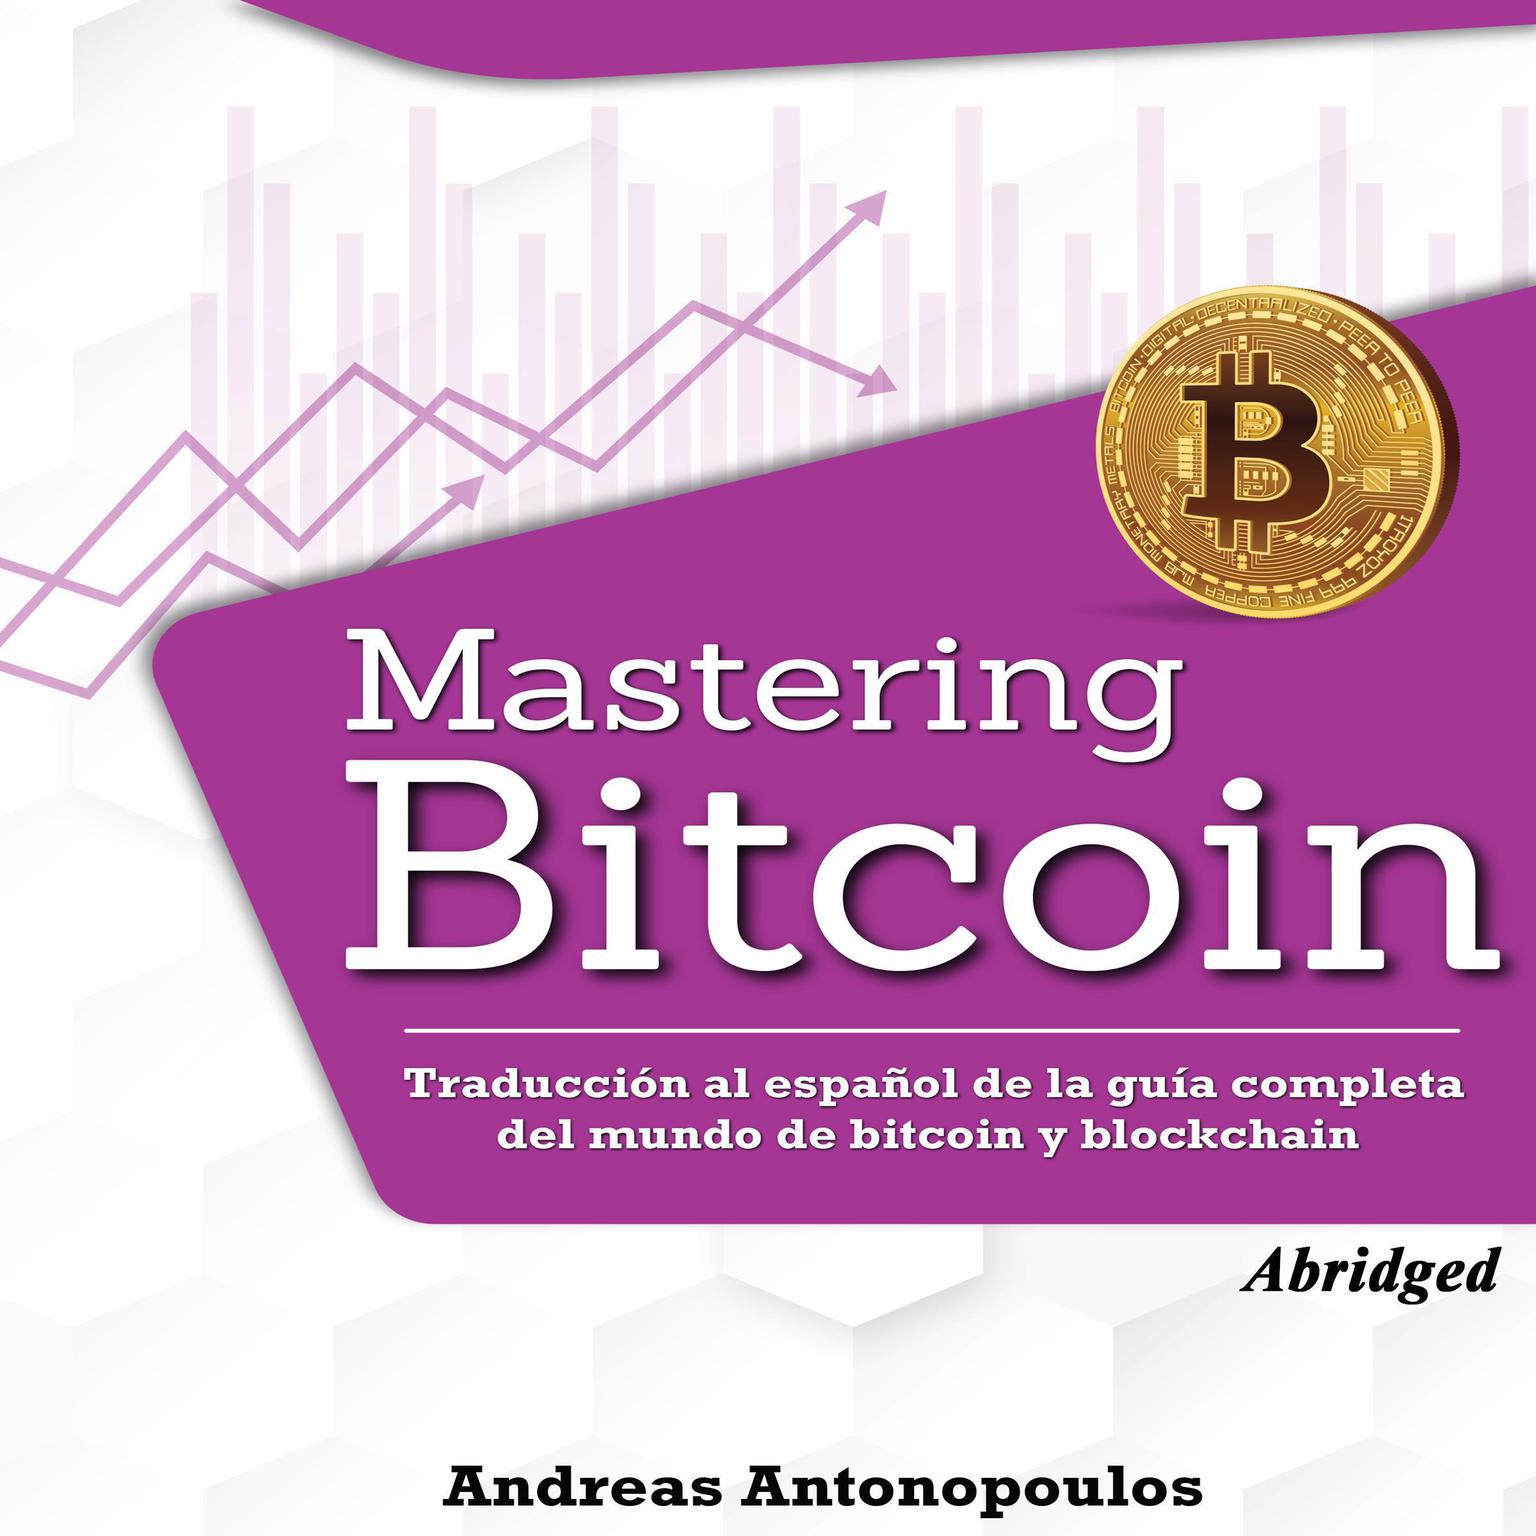 Mastering Bitcoin (Abridged): Traducción al español de la guía completa del mundo de bitcoin y blockchain Audiobook, by Andreas Antonopoulos